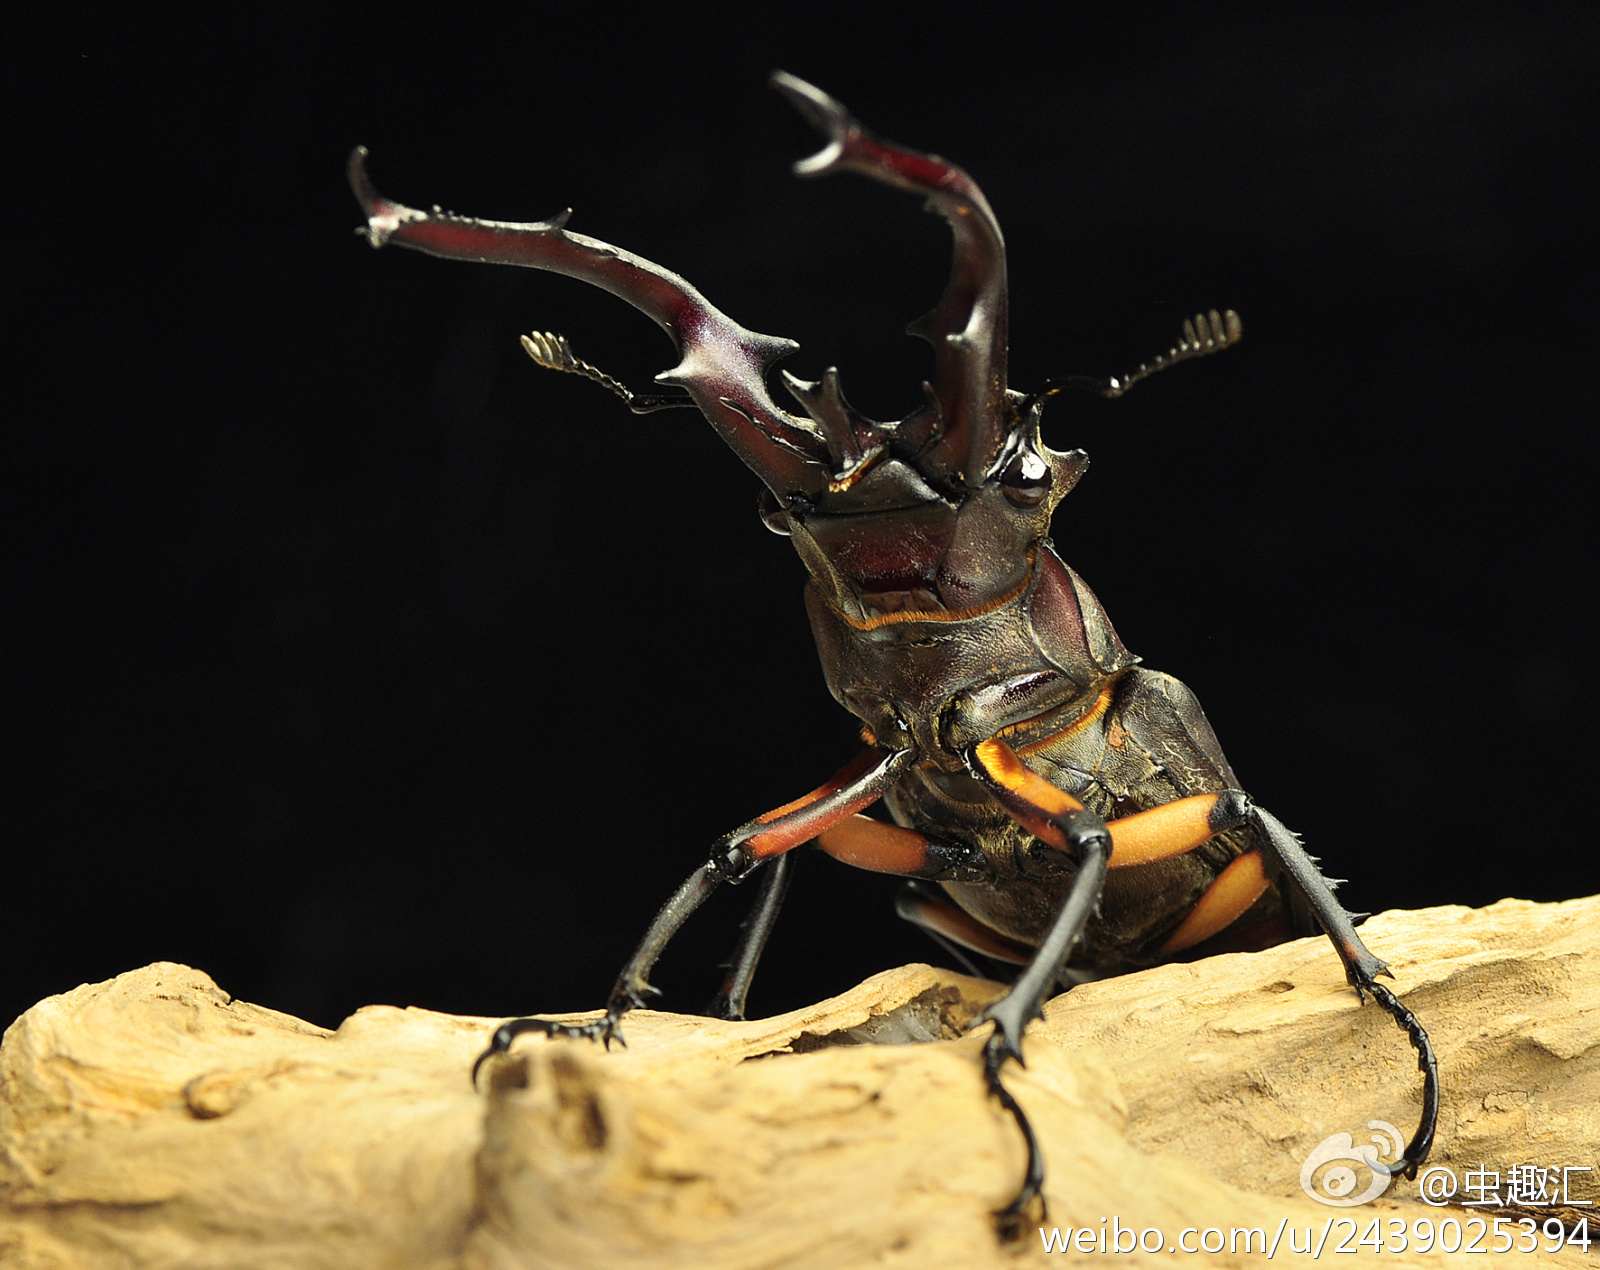 中华丽叶䗛-中国昆虫生态-图片